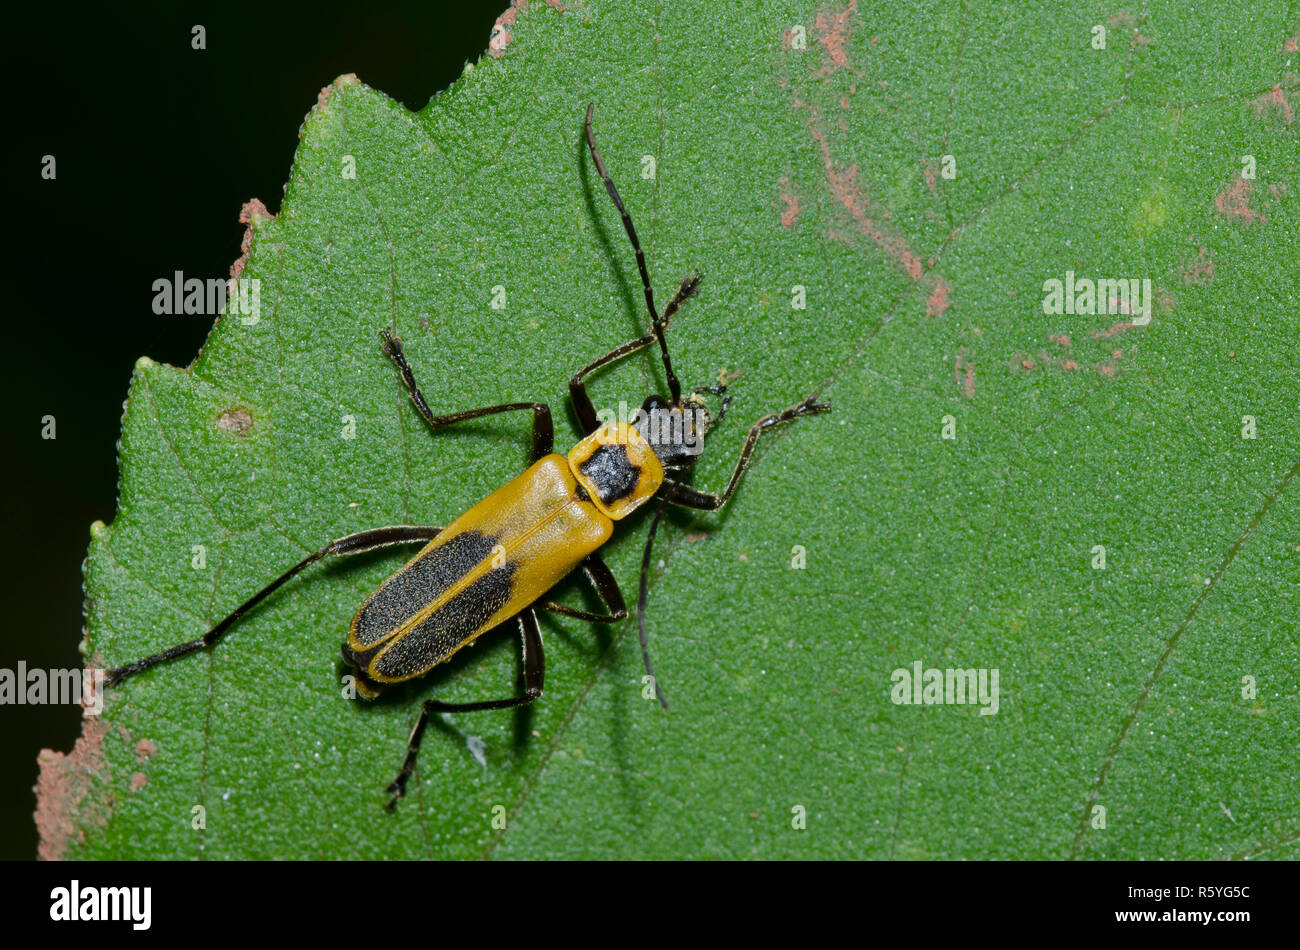 Houghton, Chauliognathus pensylvanicus Soldat Beetle Banque D'Images